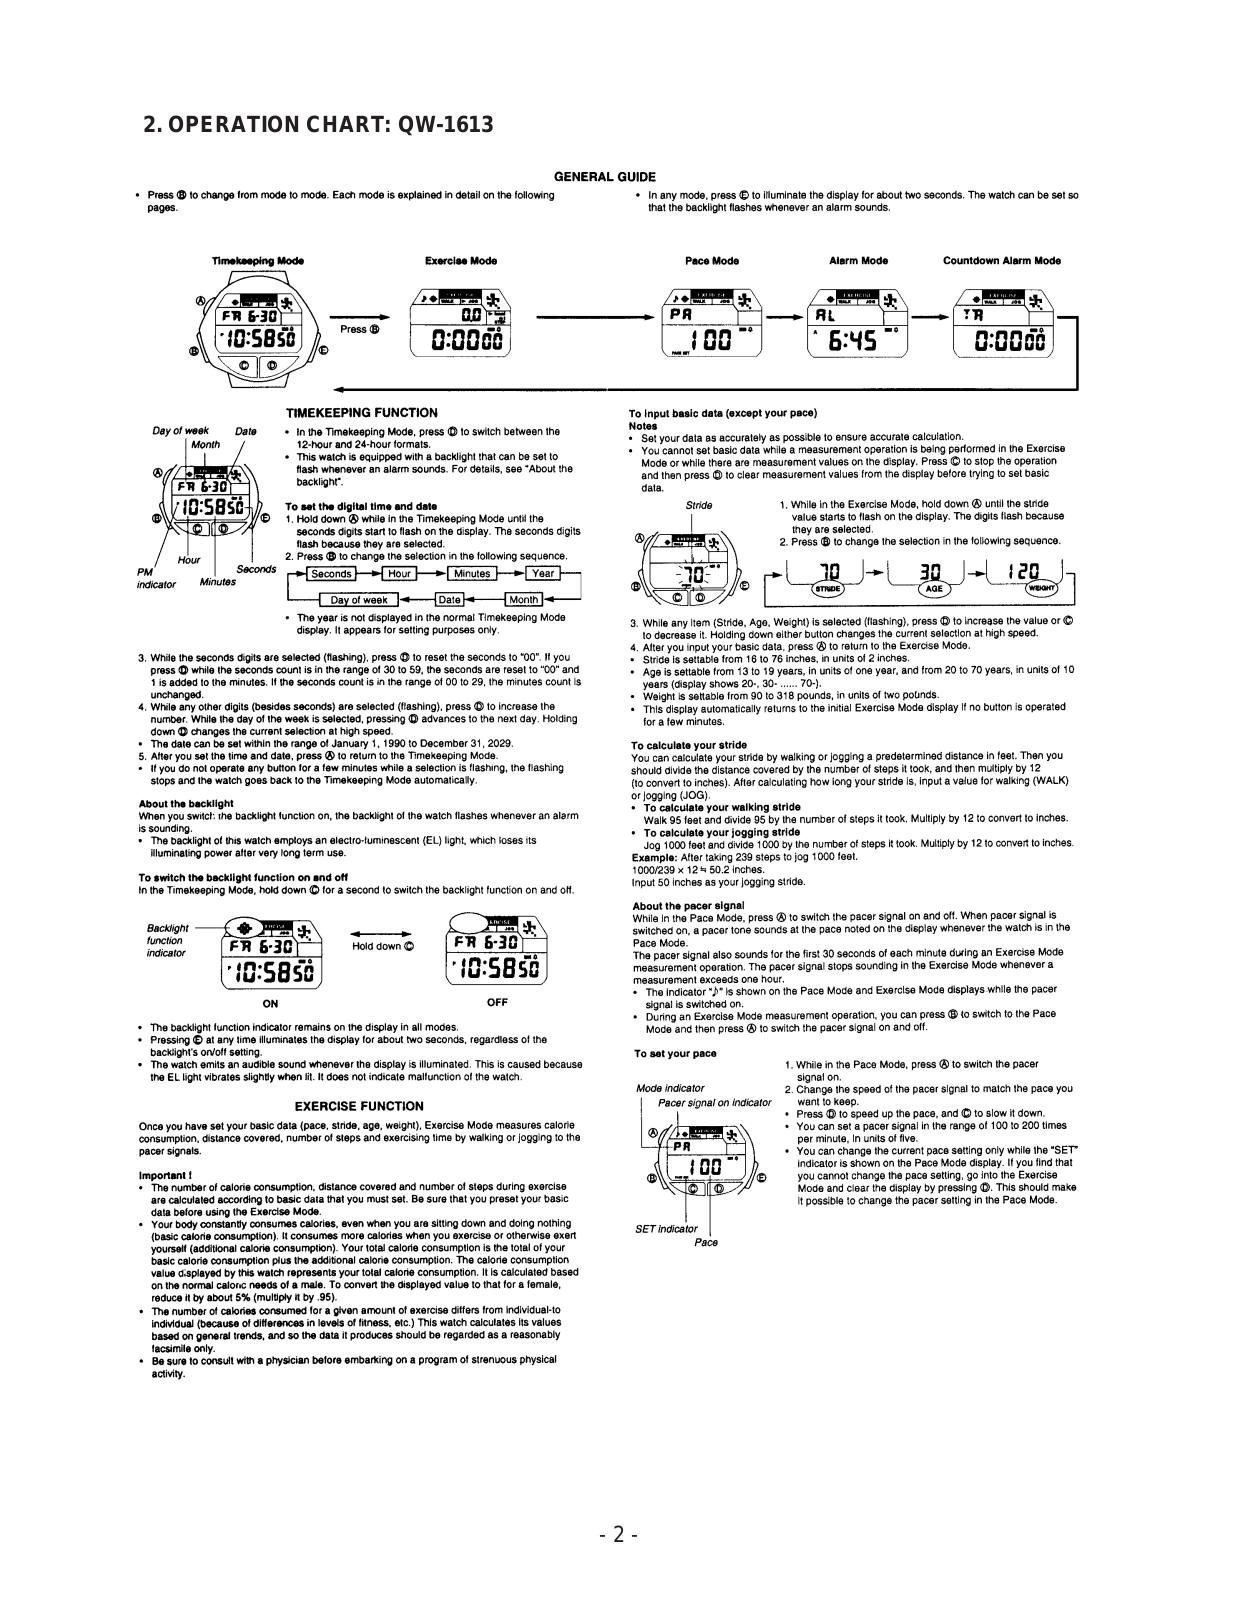 Casio 1613 Owner's Manual